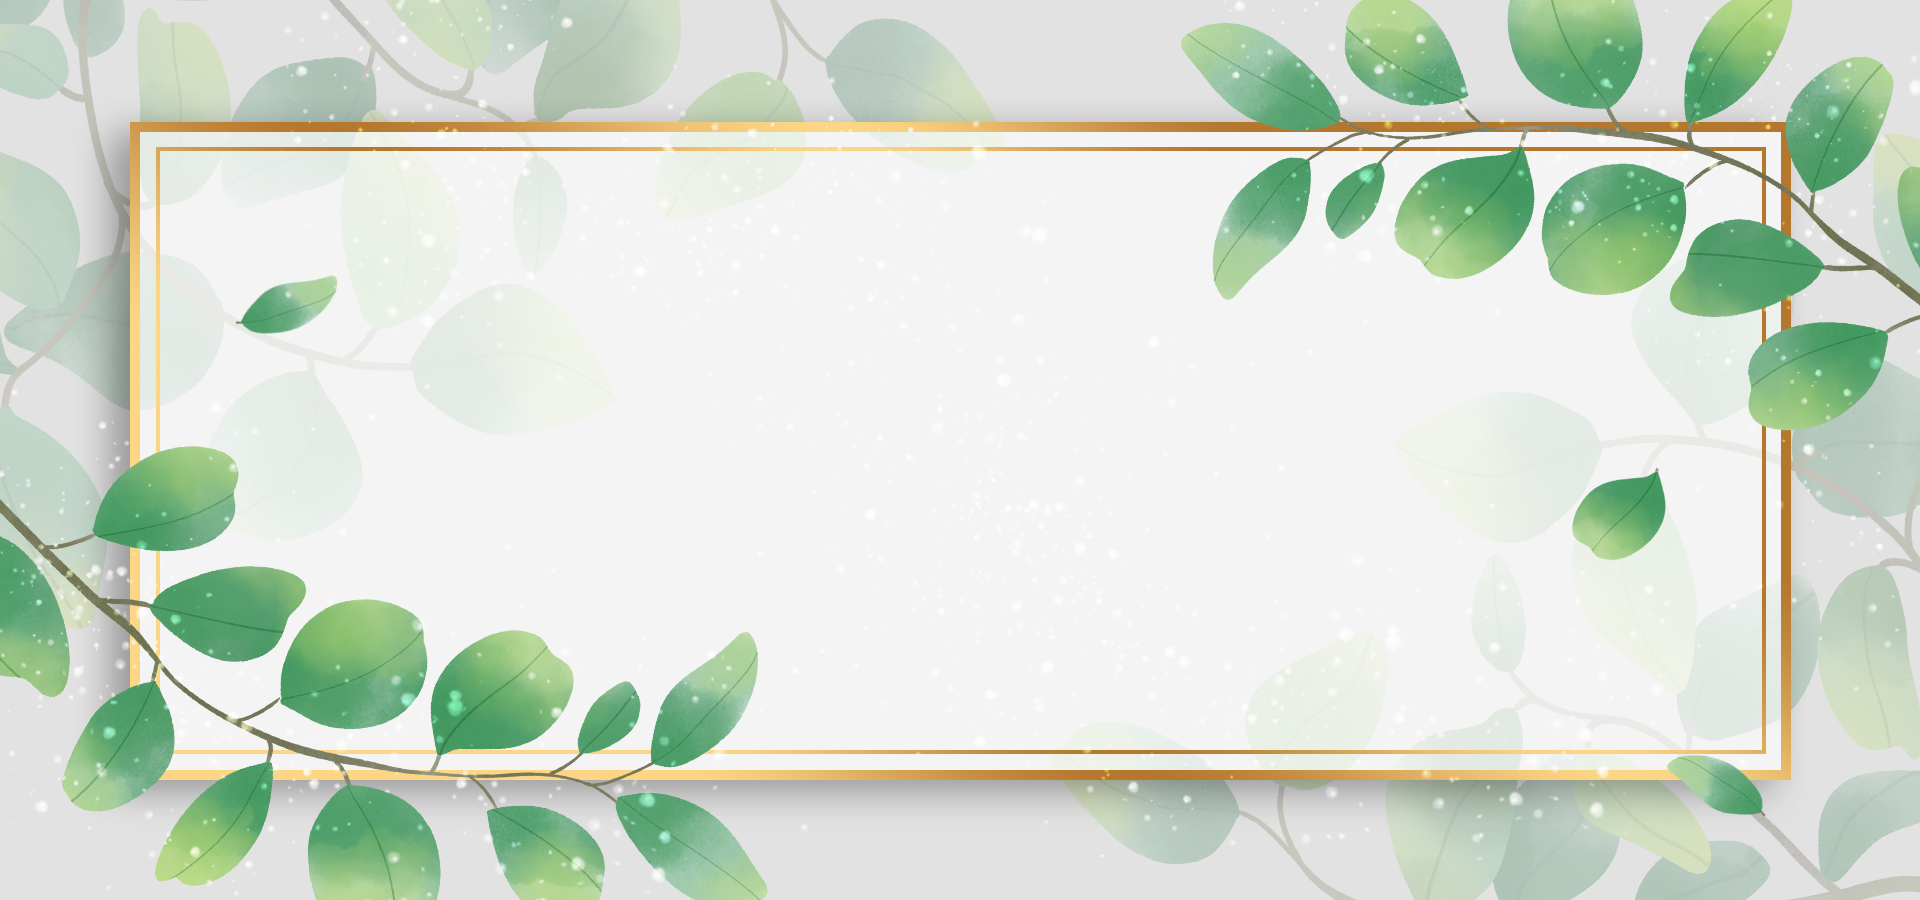 植物叶子水彩创意叶片花纹金框背景图片